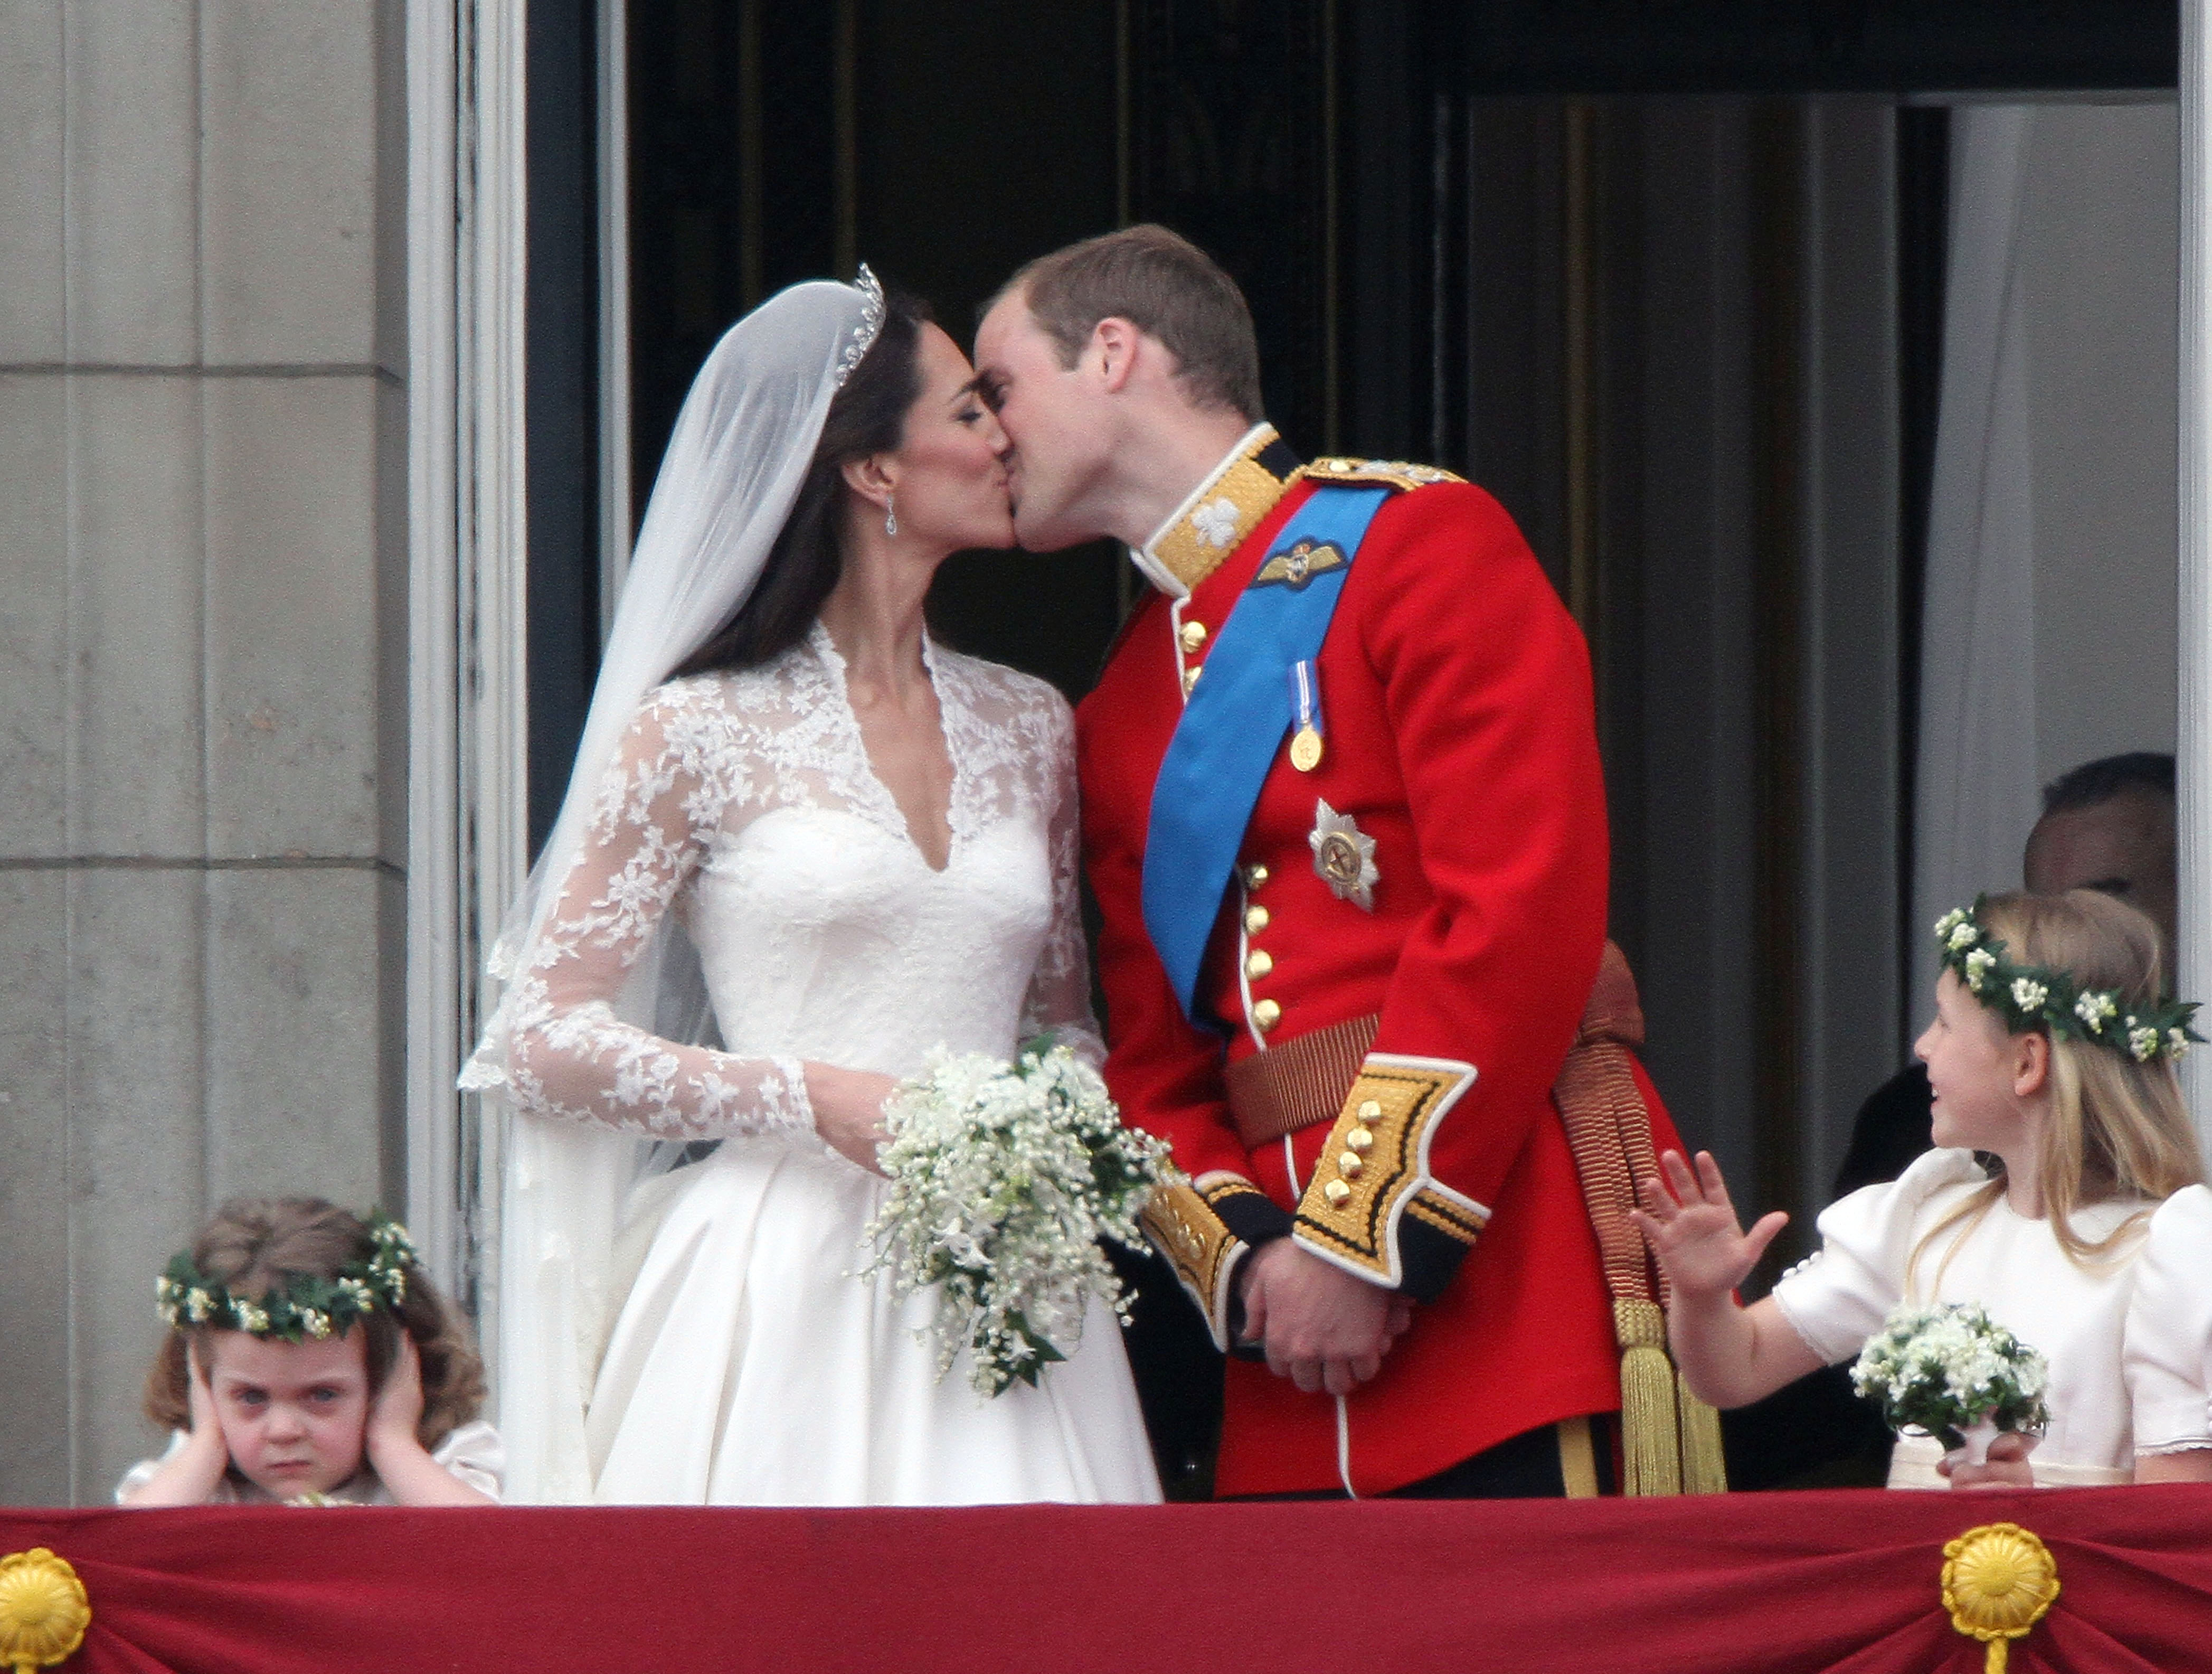 Αποκαλύφθηκε επτά χρόνια μετά! Αυτό είνα το άρωμα που φορούσε η Kate Middleton στο γάμο της!